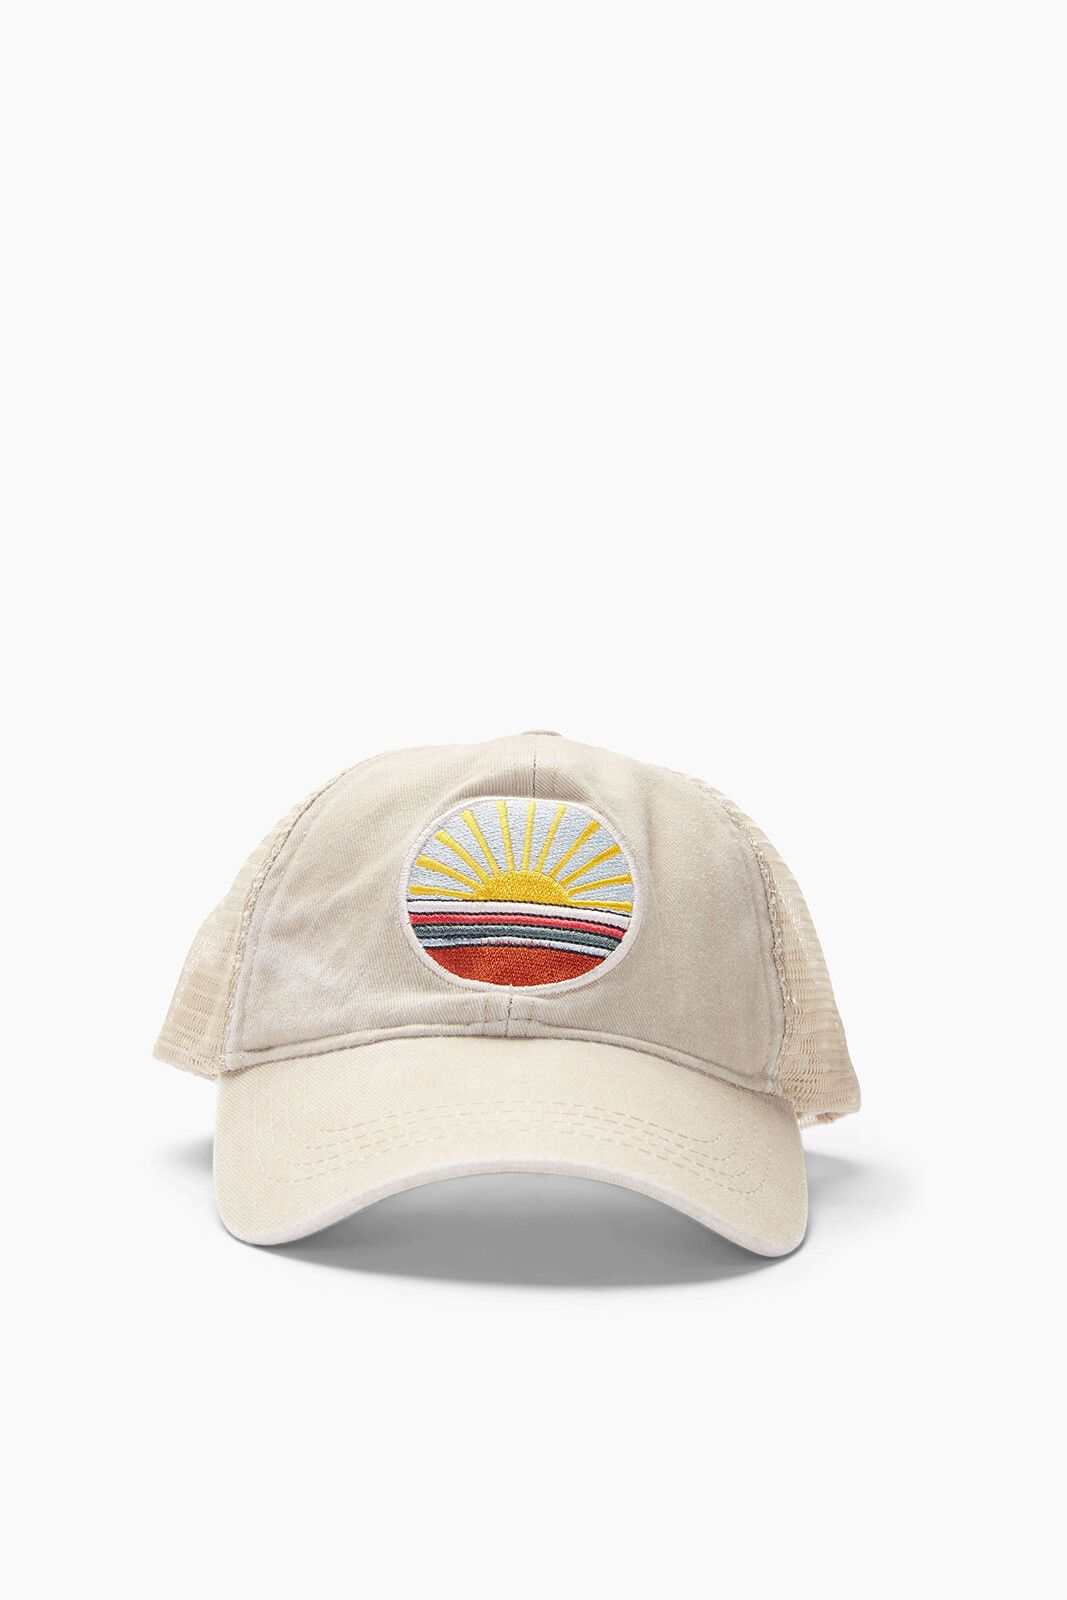 HARRIET ISLES Sunshine Trucker Hat | EVEREVE | Evereve